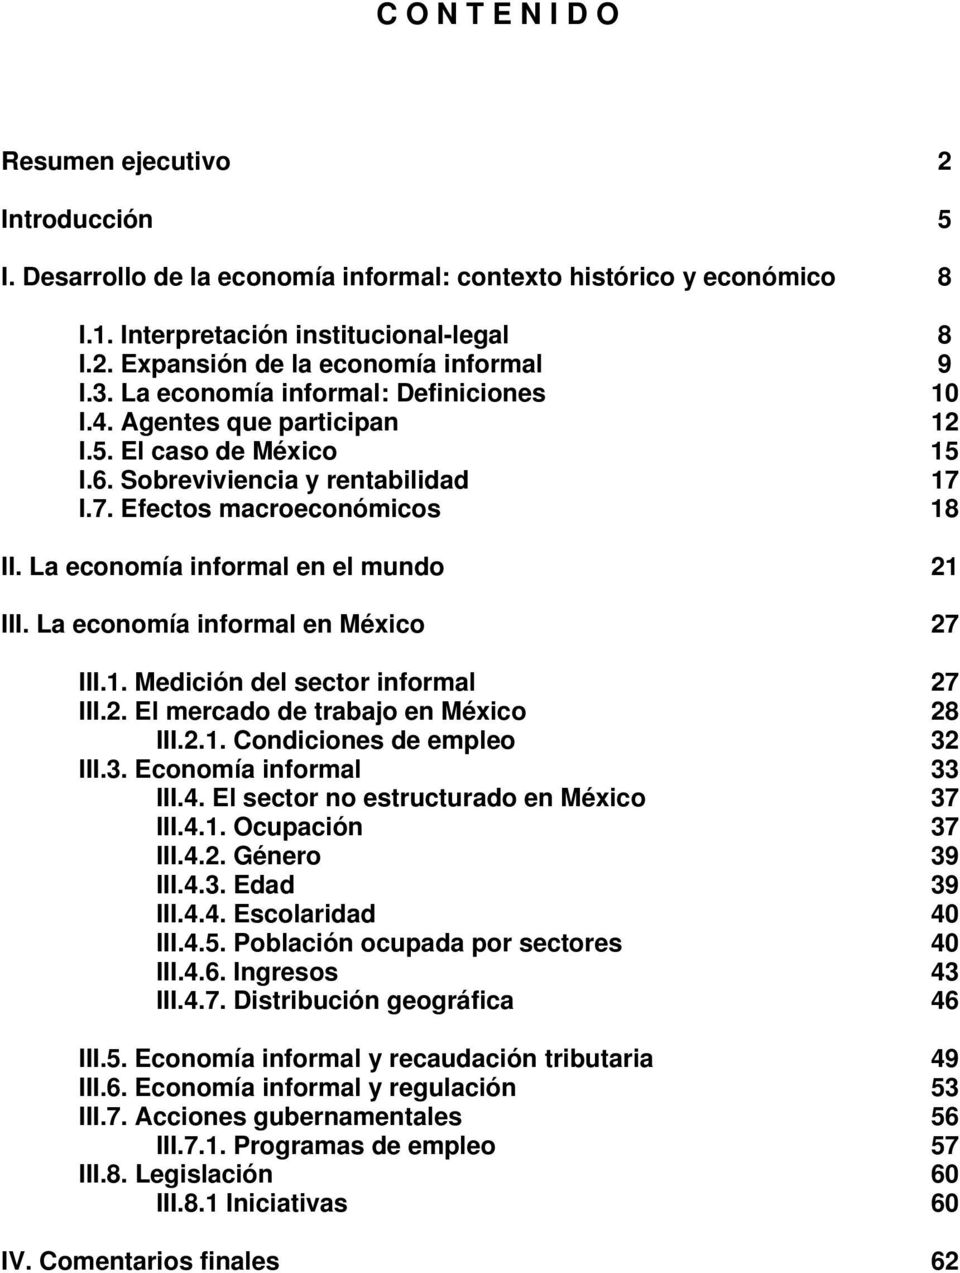 La economía informal en el mundo 21 III. La economía informal en México 27 III.1. Medición del sector informal 27 III.2. El mercado de trabajo en México 28 III.2.1. Condiciones de empleo 32